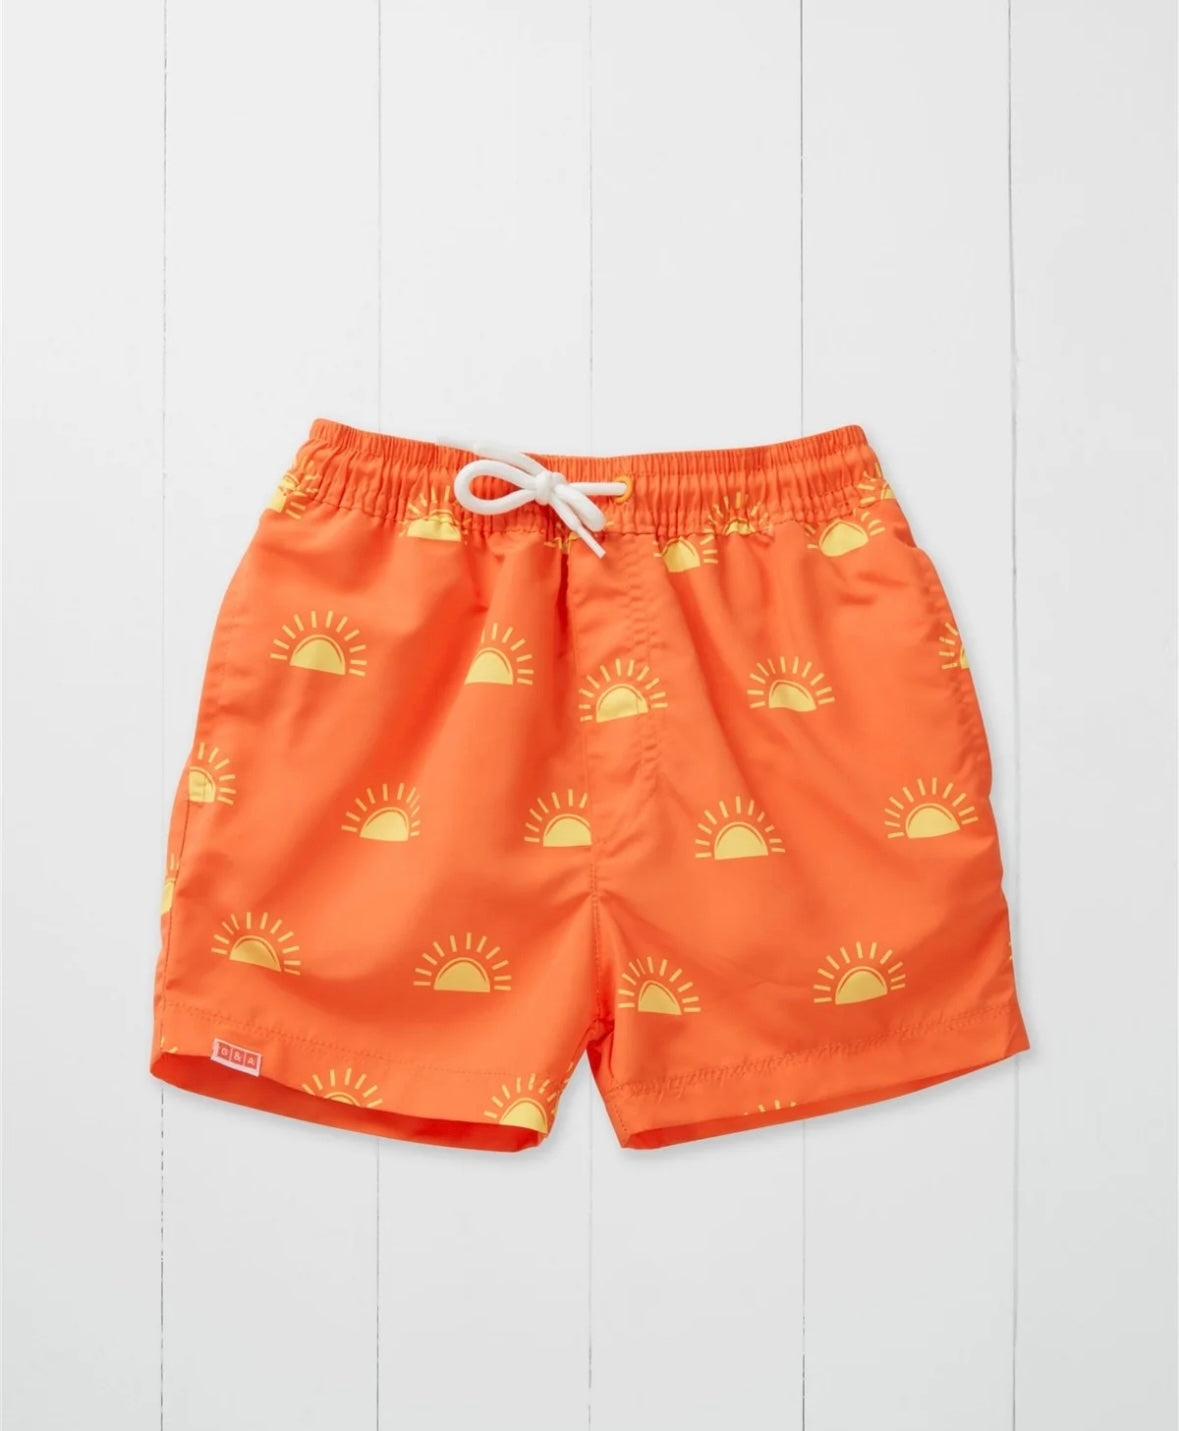 Grass & Air sun print swim shorts